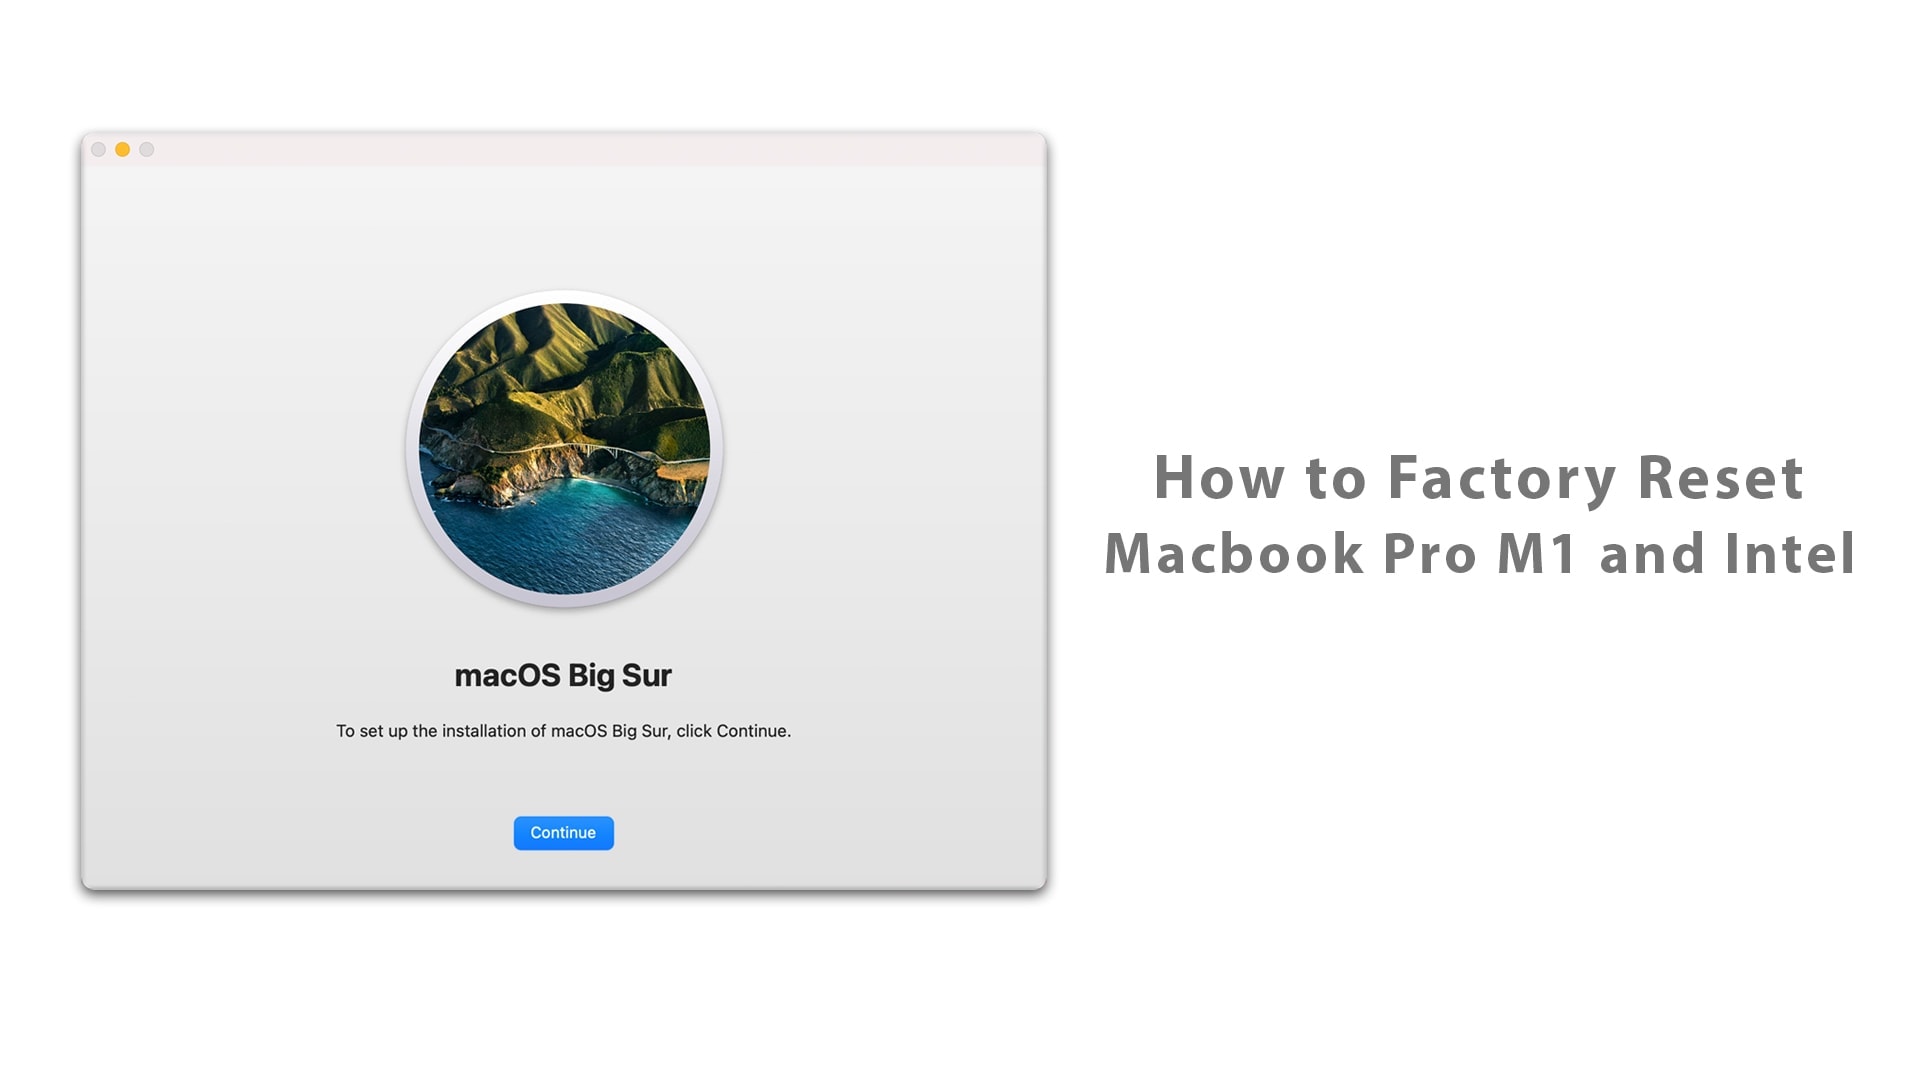 vmware for macbook pro m1